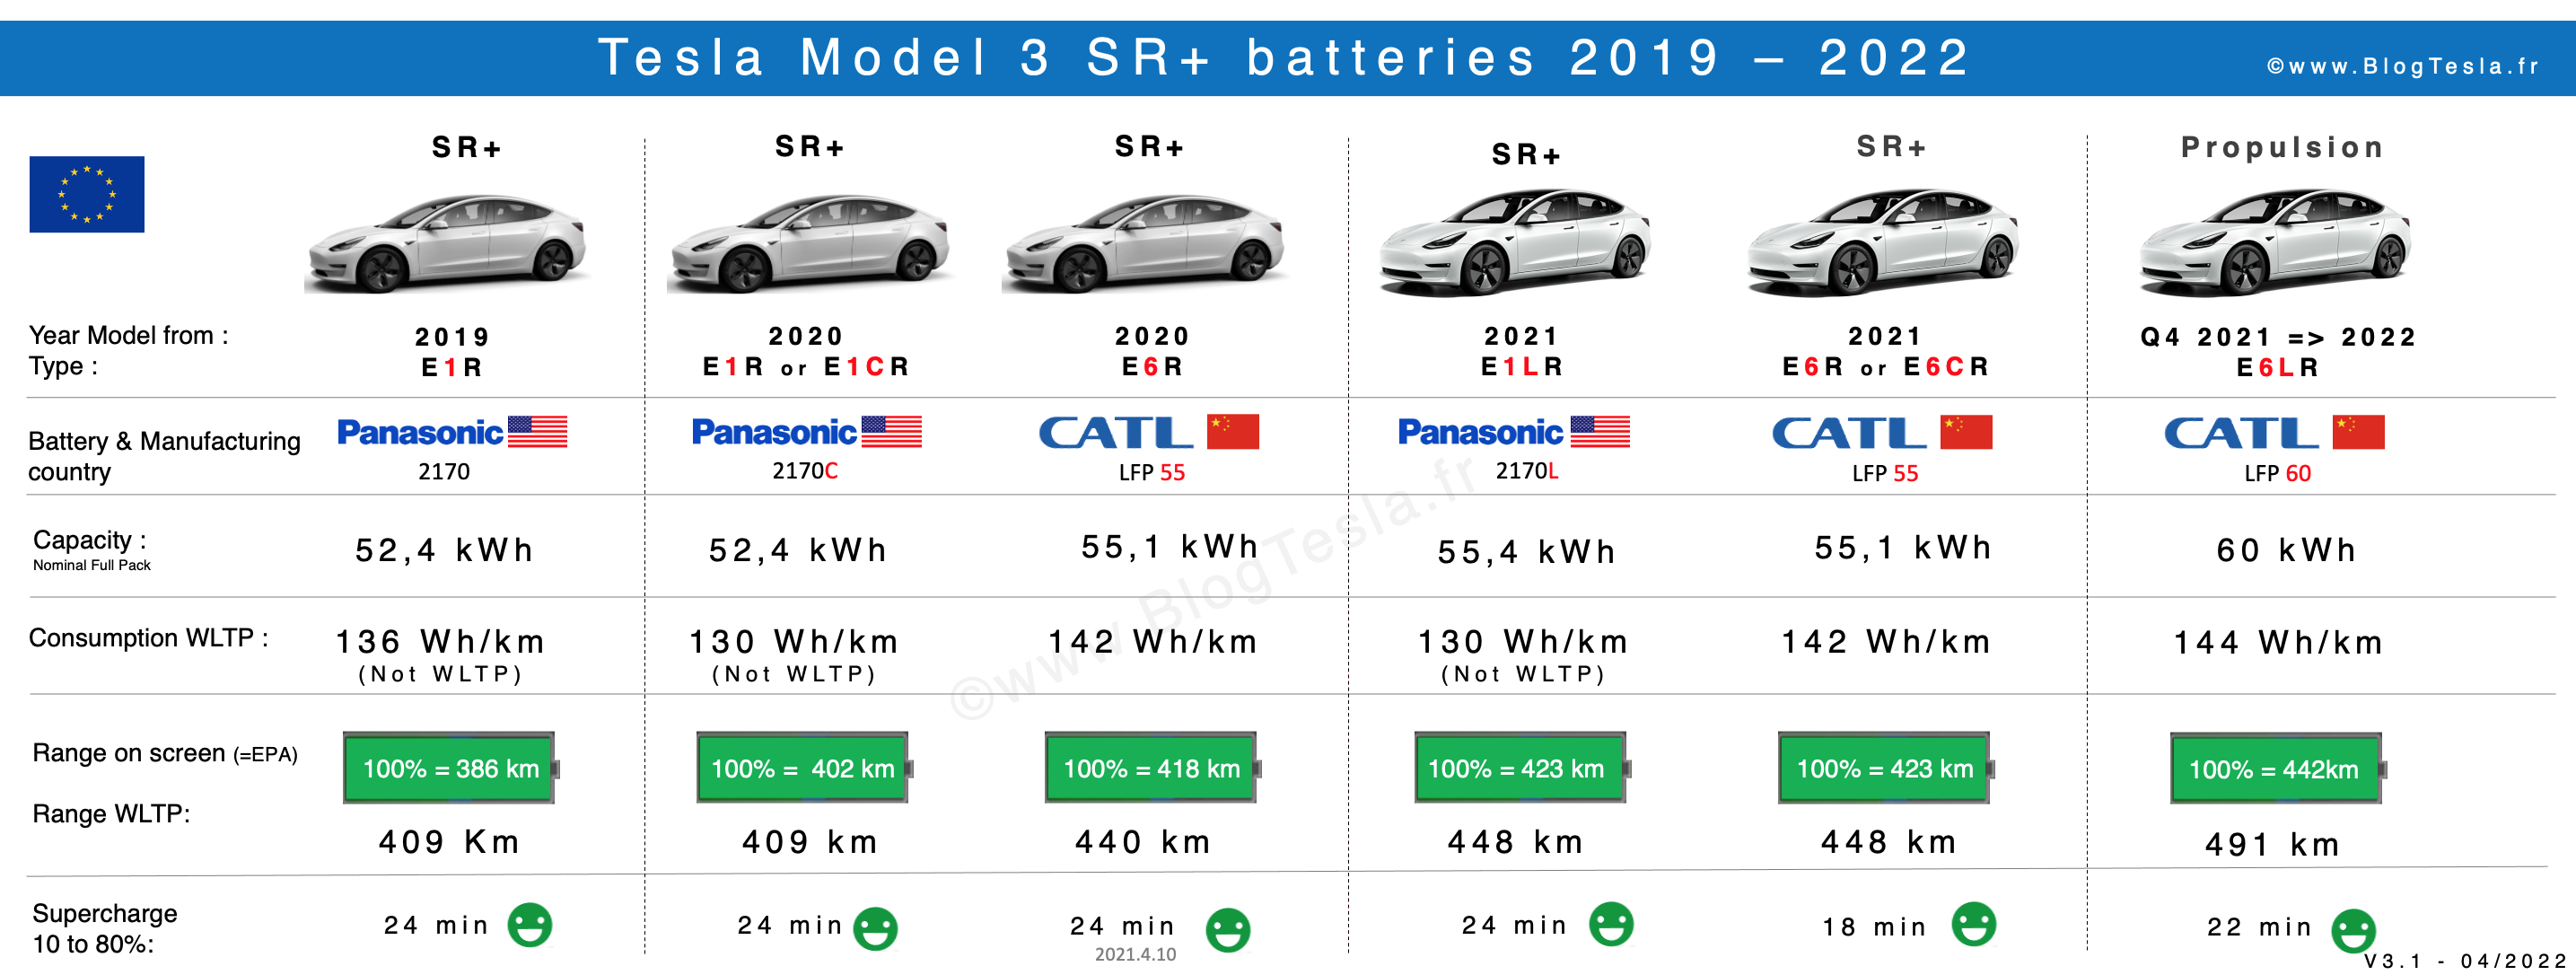 Batteries et dégradation - Model 3 Propulsion - Forum et Blog Tesla